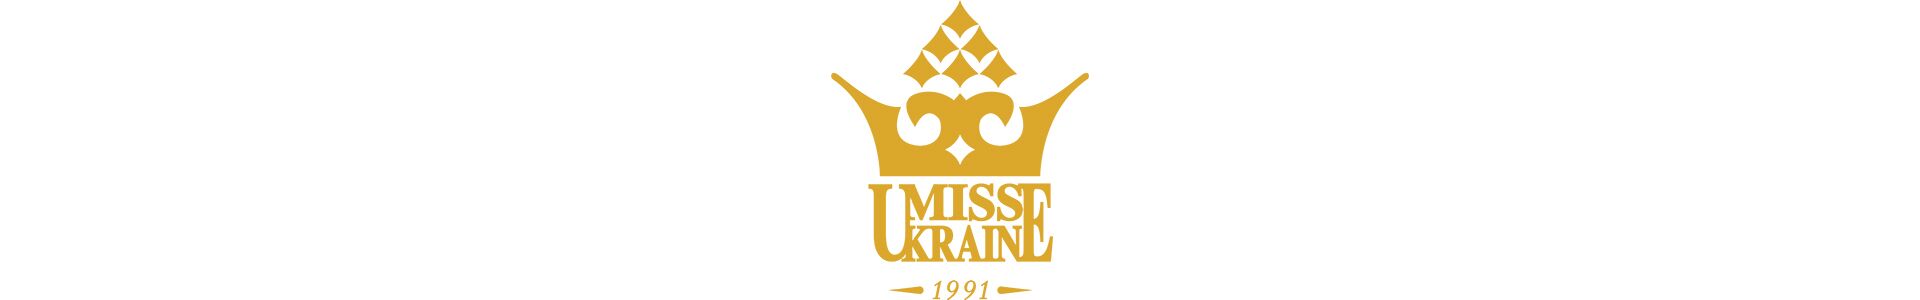 Грандіозне шоу до 30-го ювілею конкурсу «Міс Україна» відбудеться!